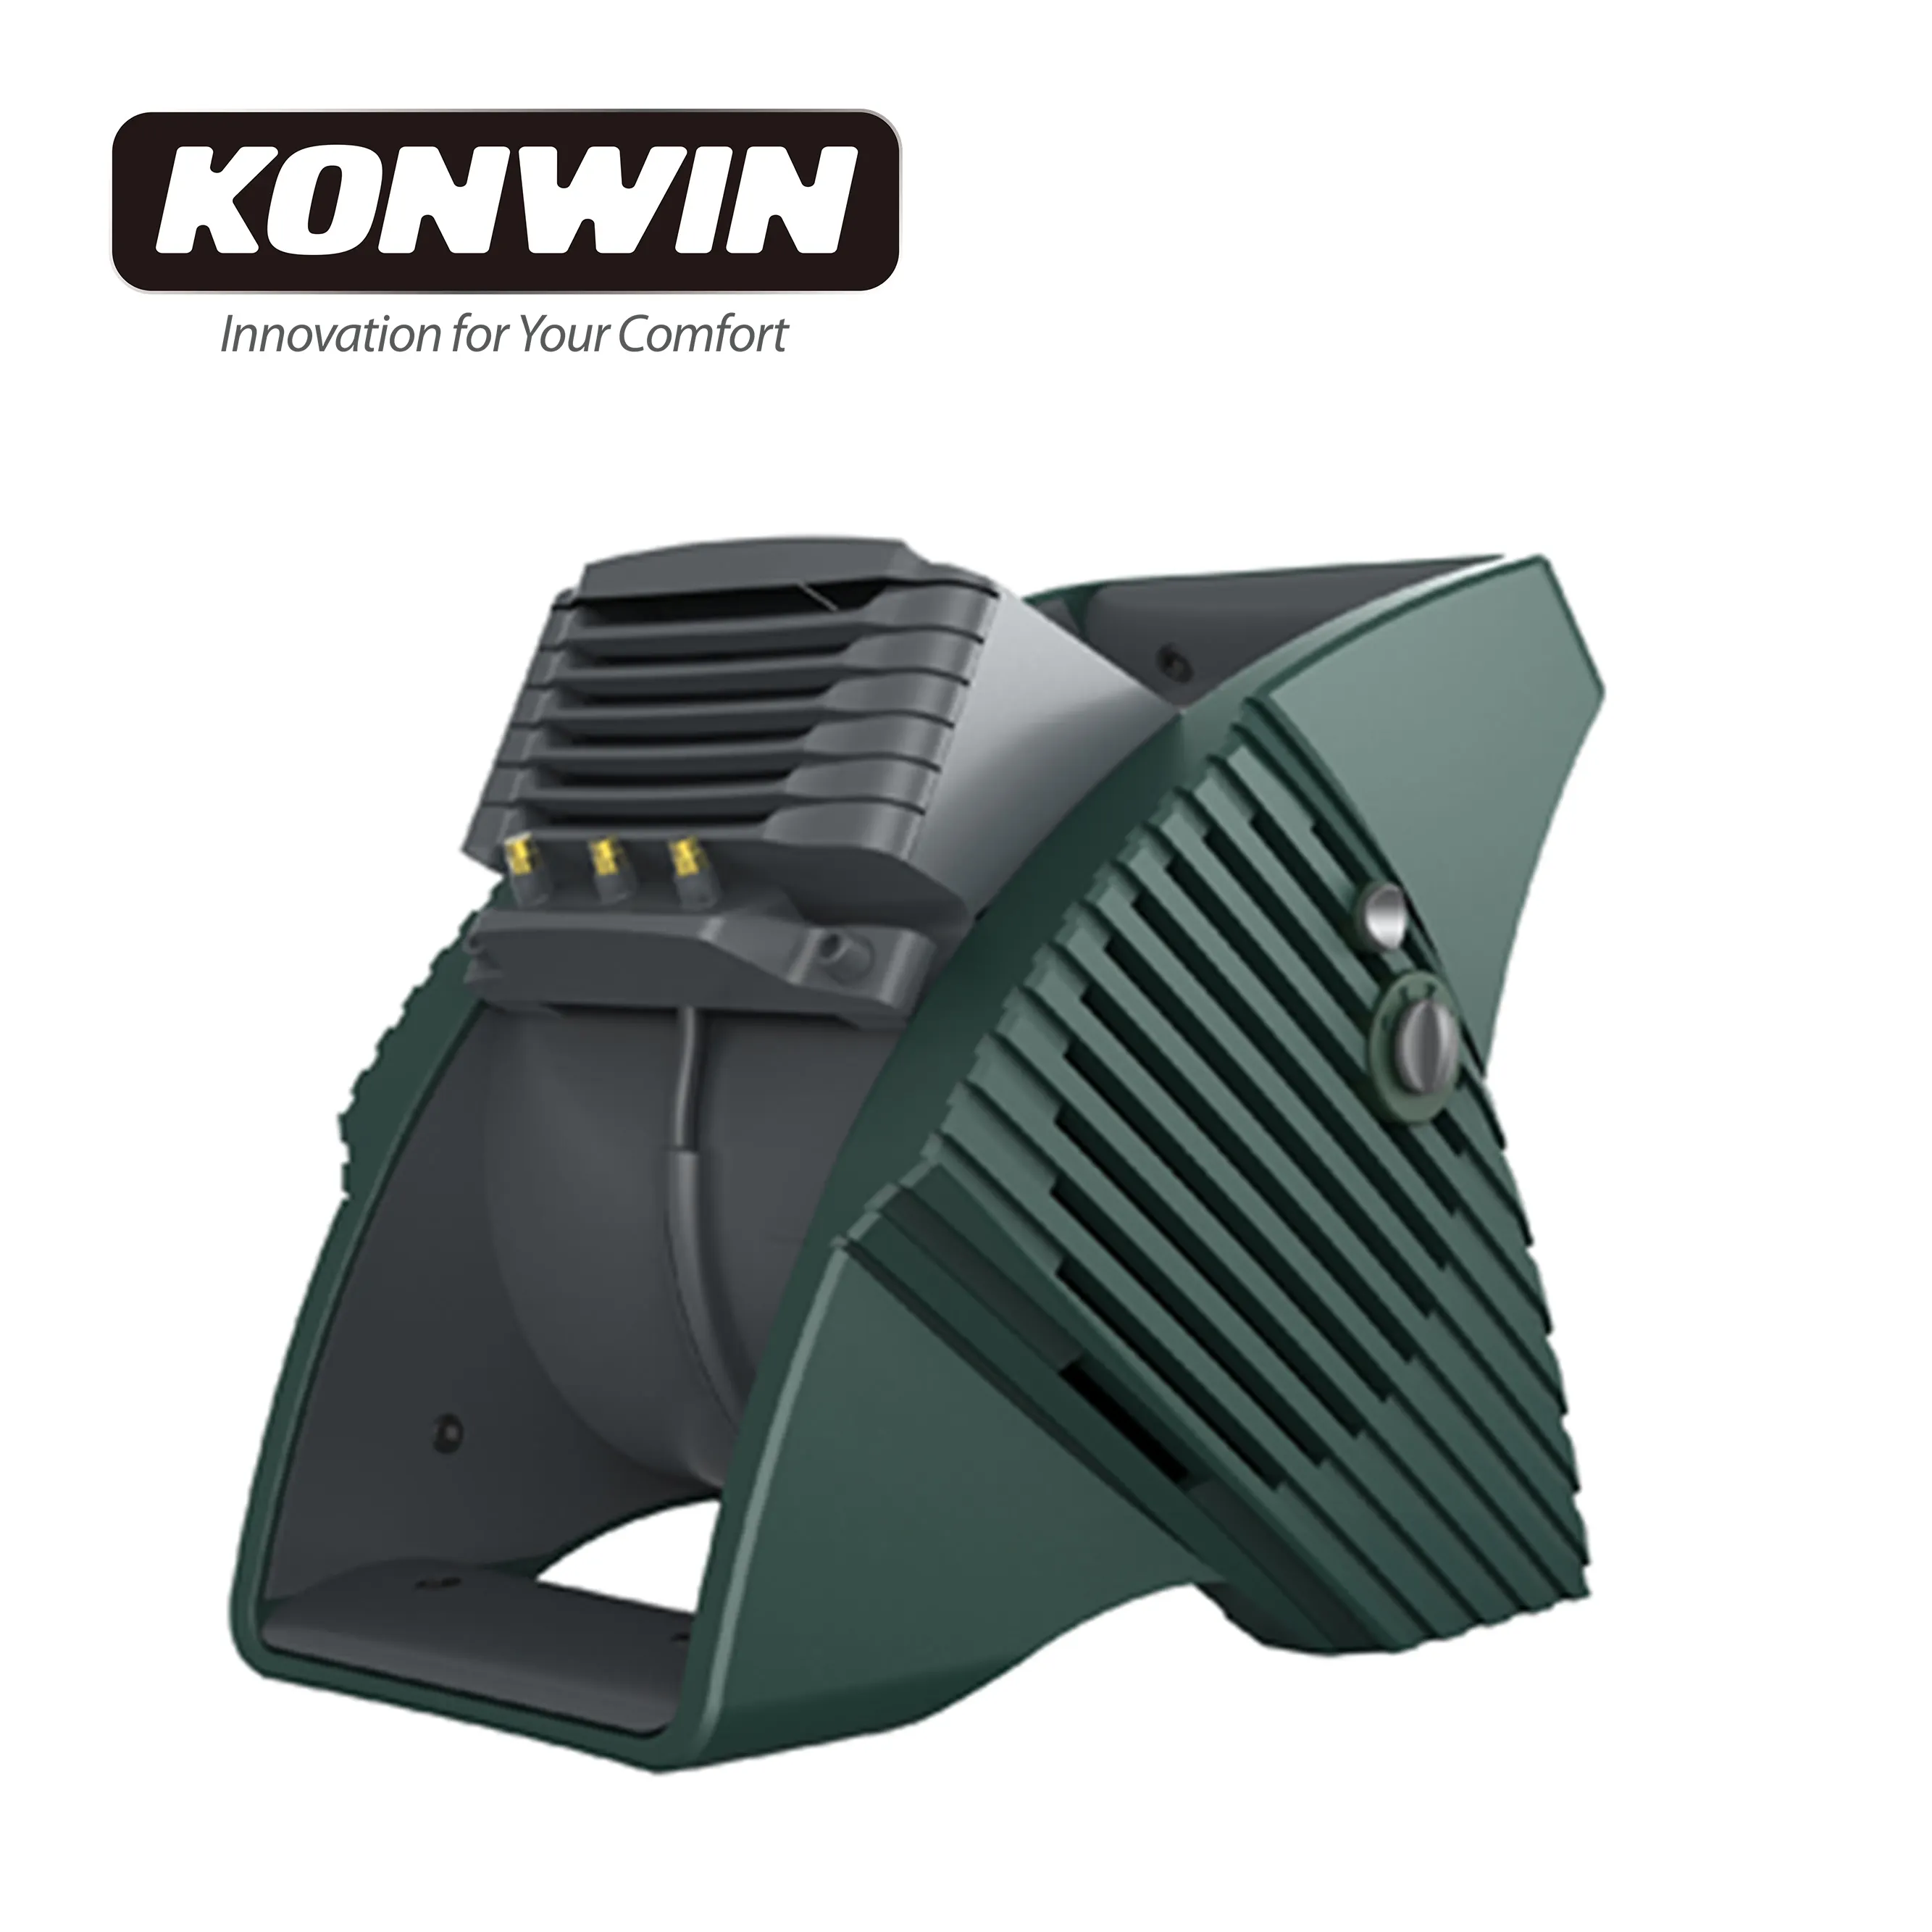 Konwin ventilador soprador de ar, equipamento de restauração de danos de água, secador de tapete, ventilador de chão para casa MAM-03